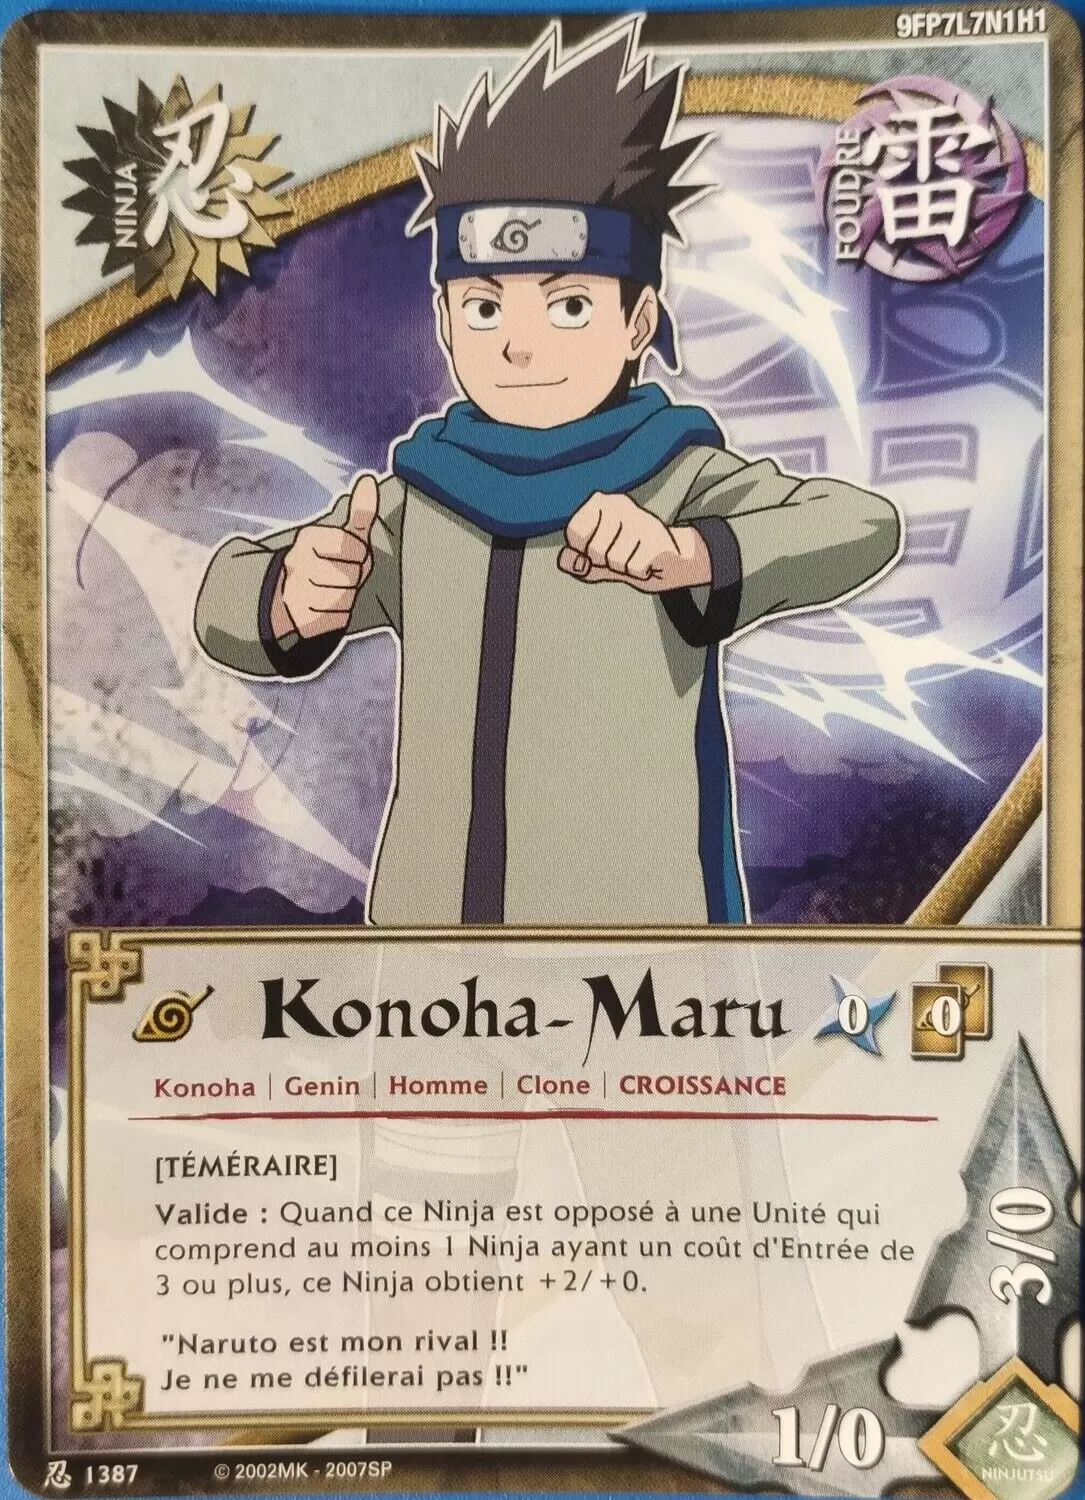 Naruto - Mon jeu de cartes